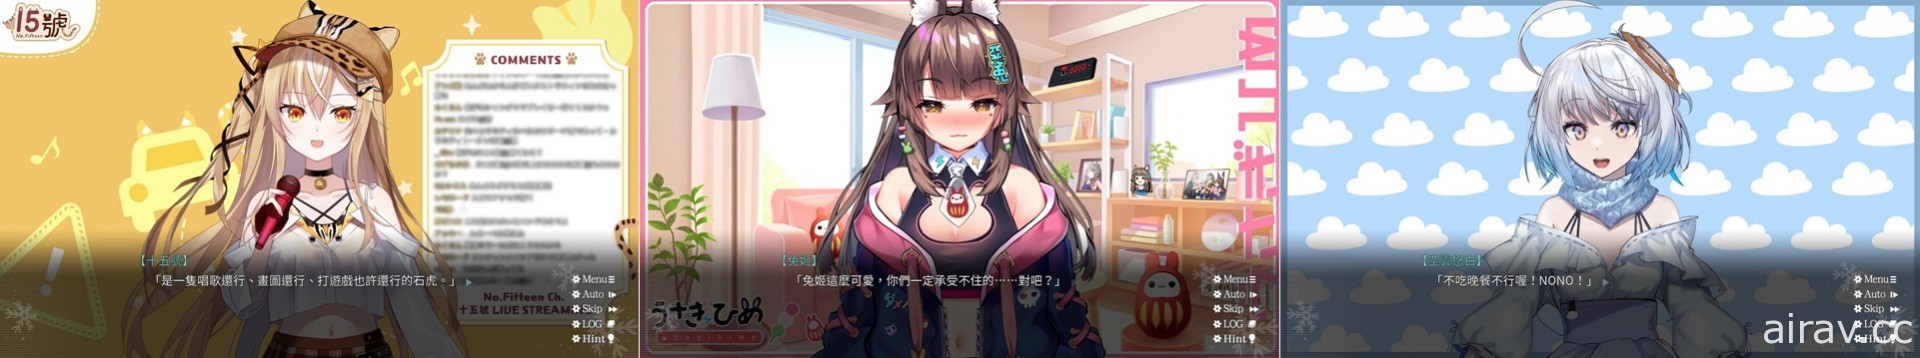 台湾原创恋爱 AVG《花落冬阳》于 Steam 上市 以“梦想”与“思念”为主题的文字冒险游戏